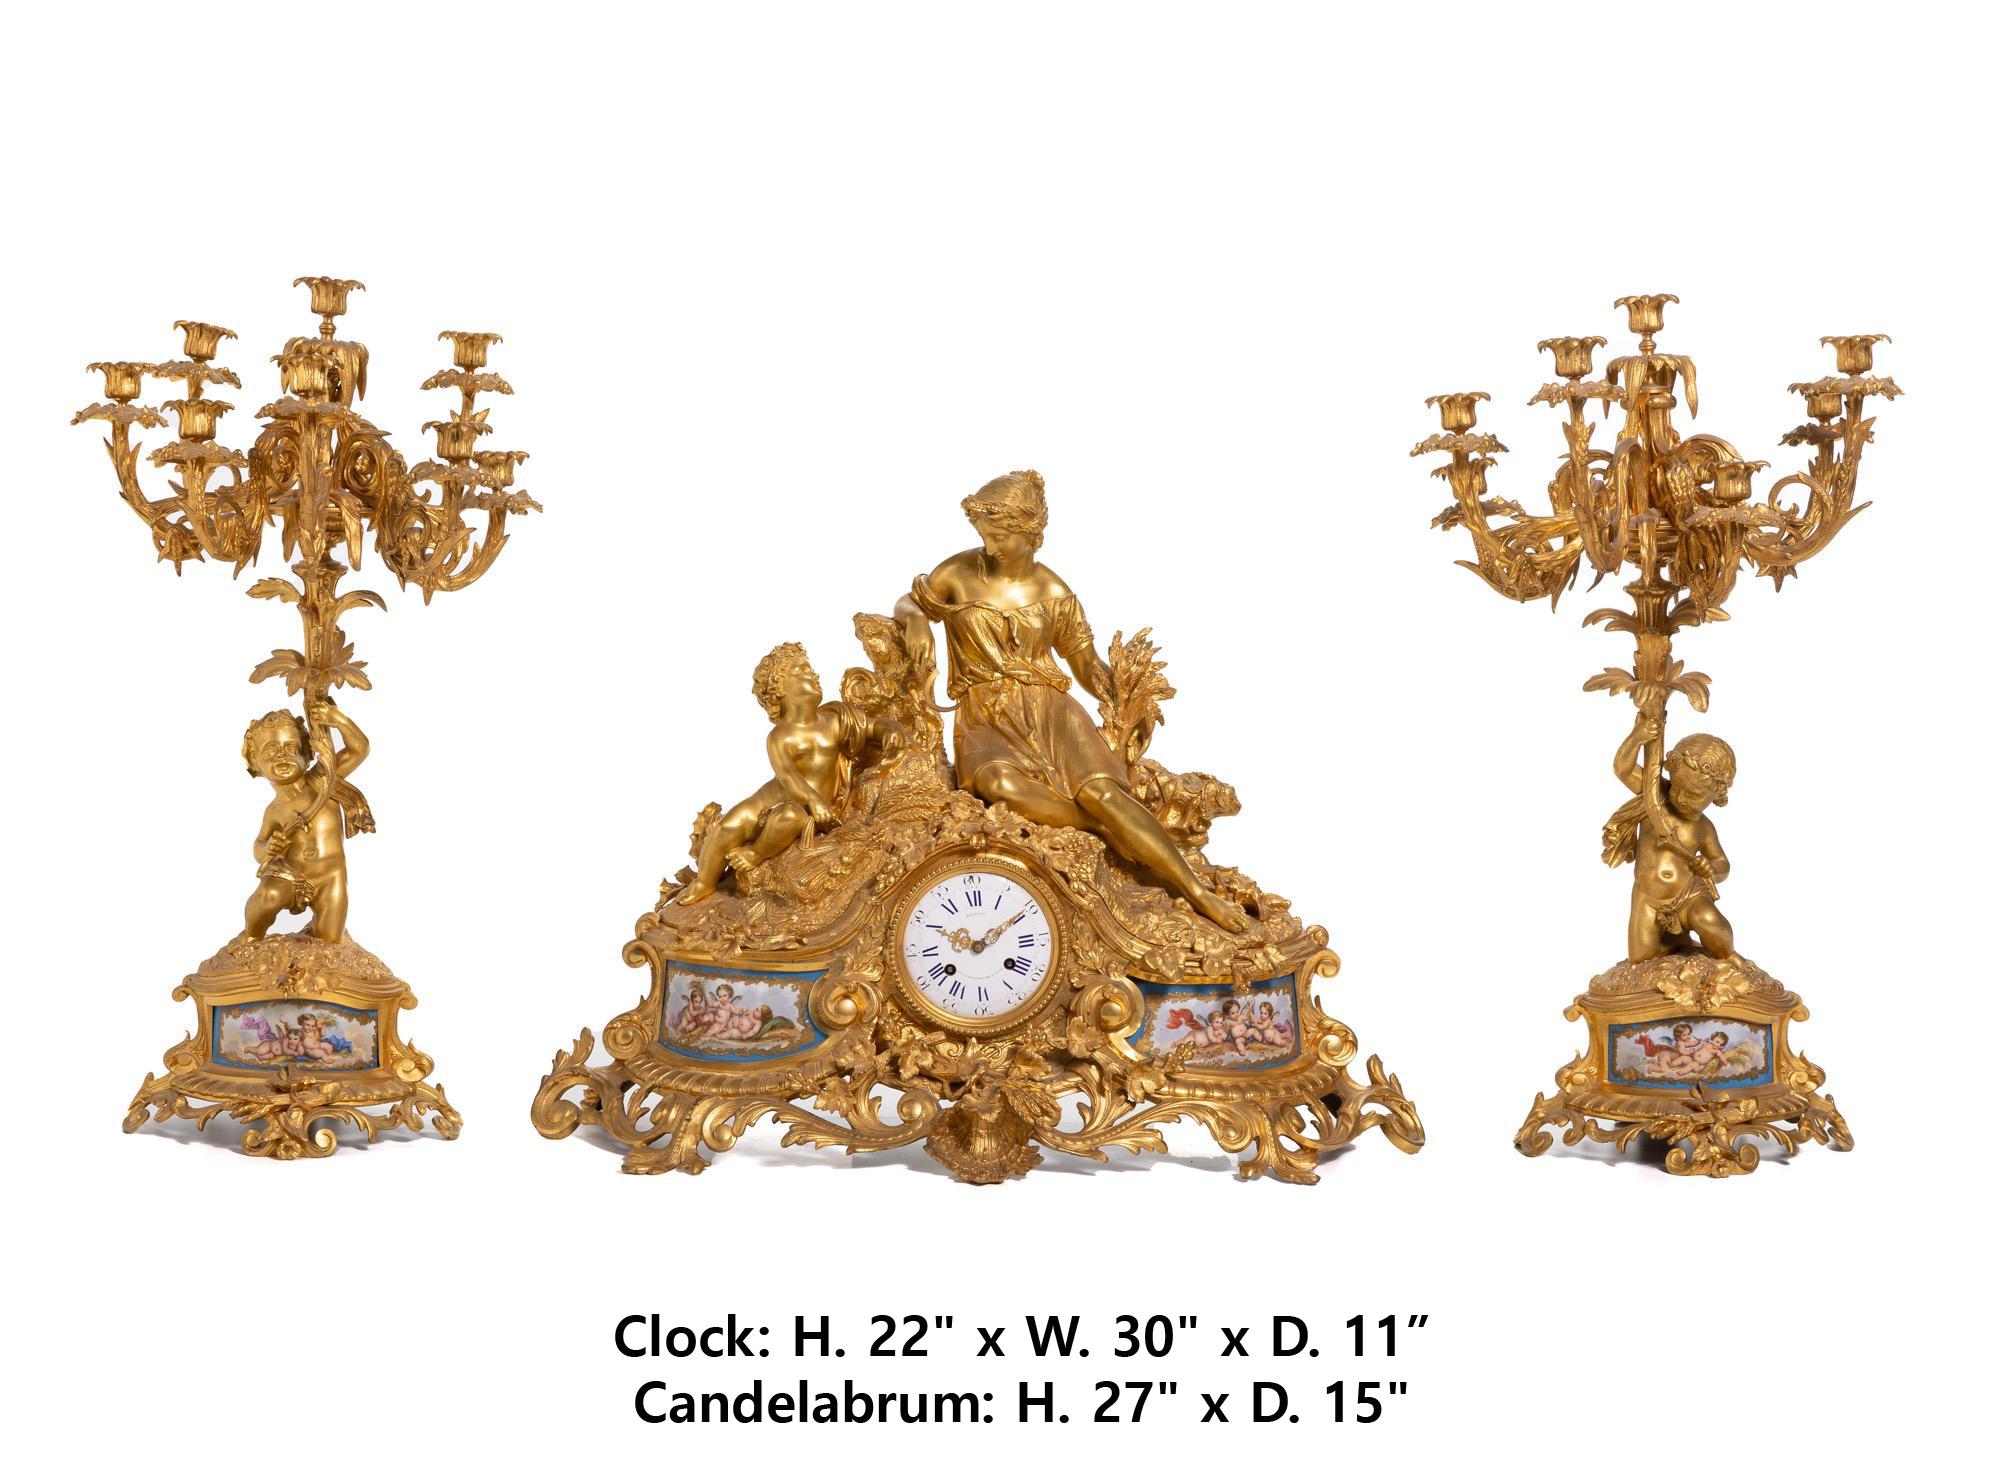 Exceptionnel 3 pièces en bronze doré et porcelaine de Sèvres de la fin du 19ème siècle.  horloge garniture
Cadran marqué : Richond / Boult. / Montmartre 21 Paris ; Mouvement marqué : Roblin / A Paris / 12686 
La pendule présente un cadran en métal